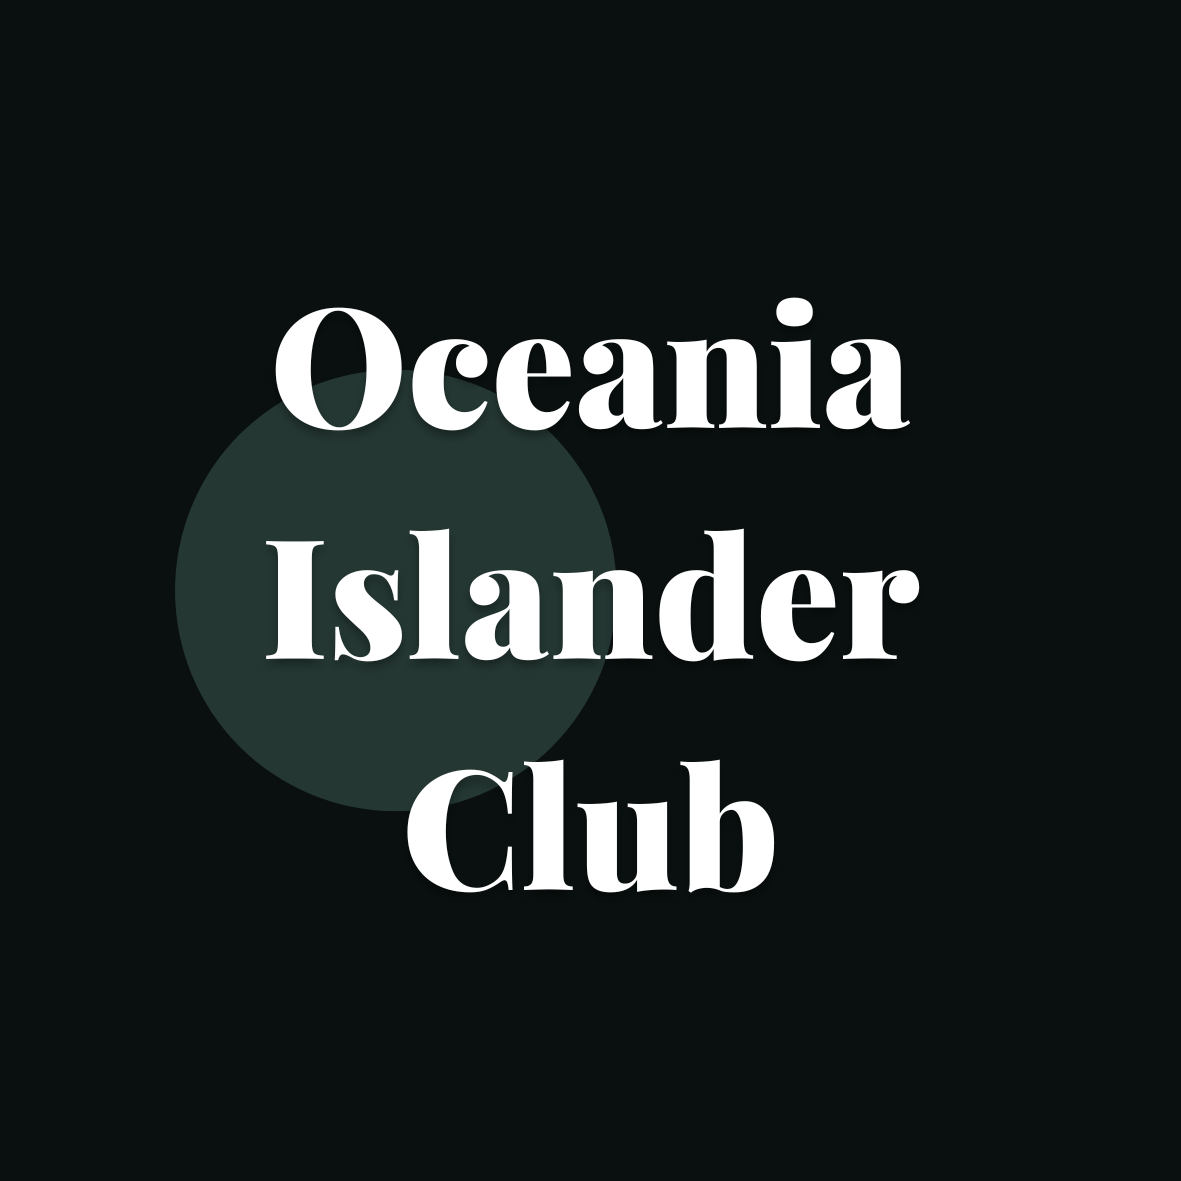 Oceania Islander Club